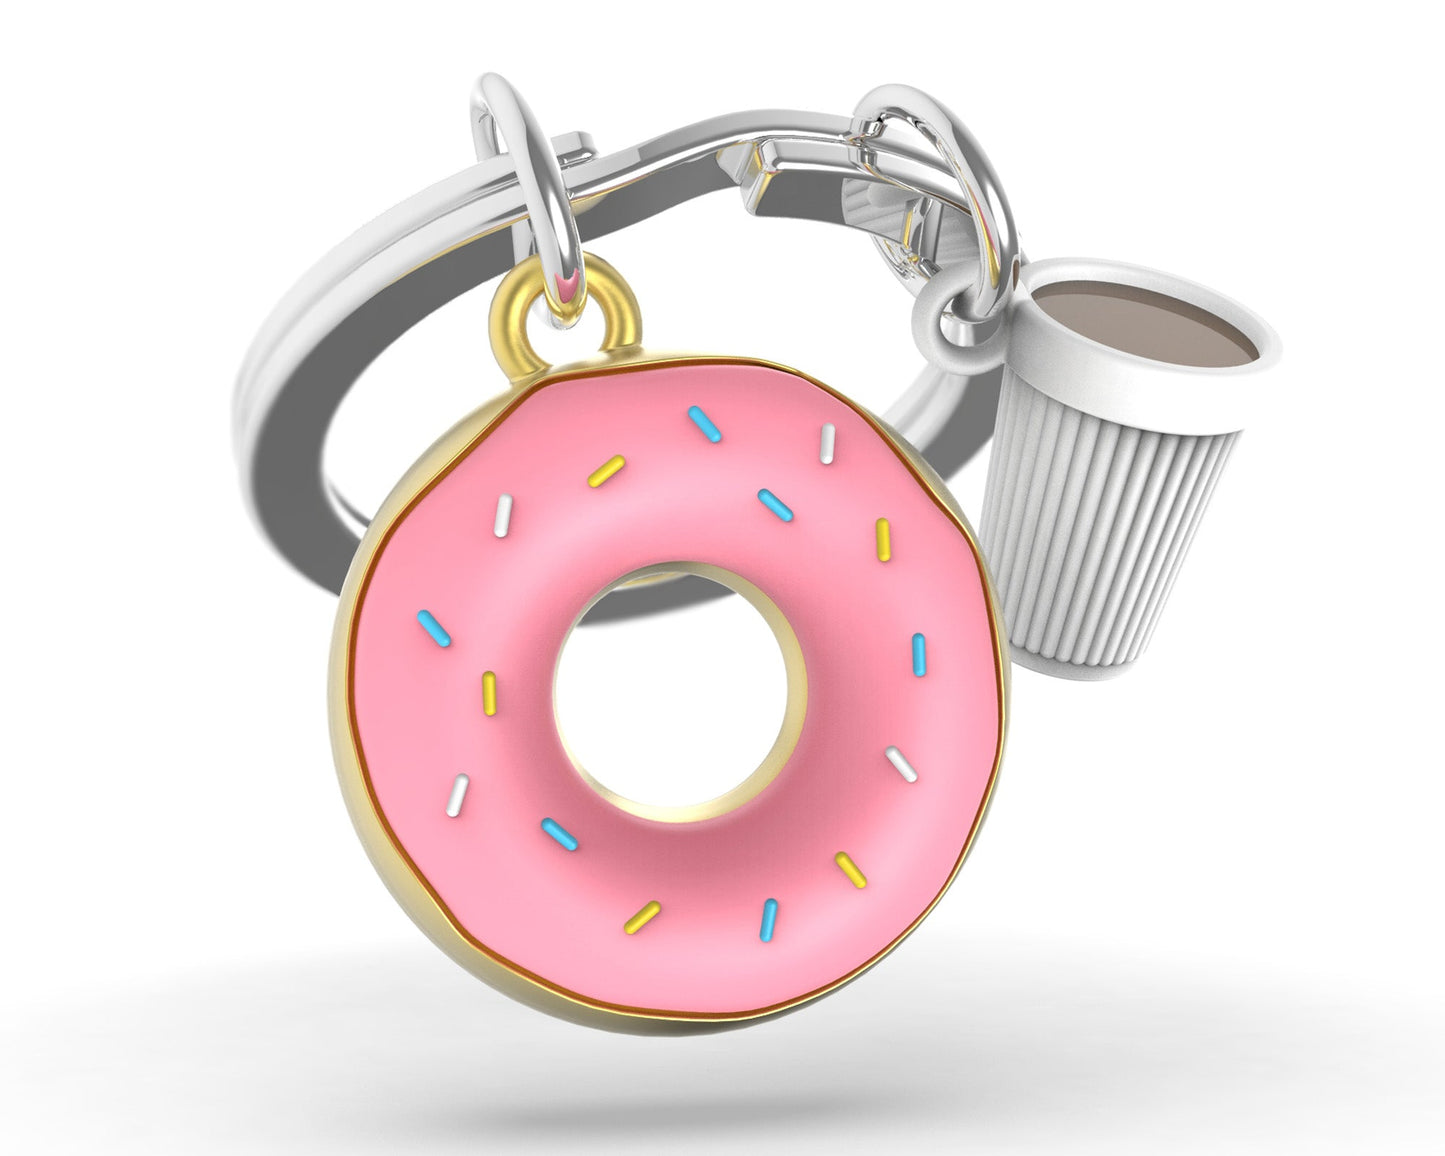 Donut key ring